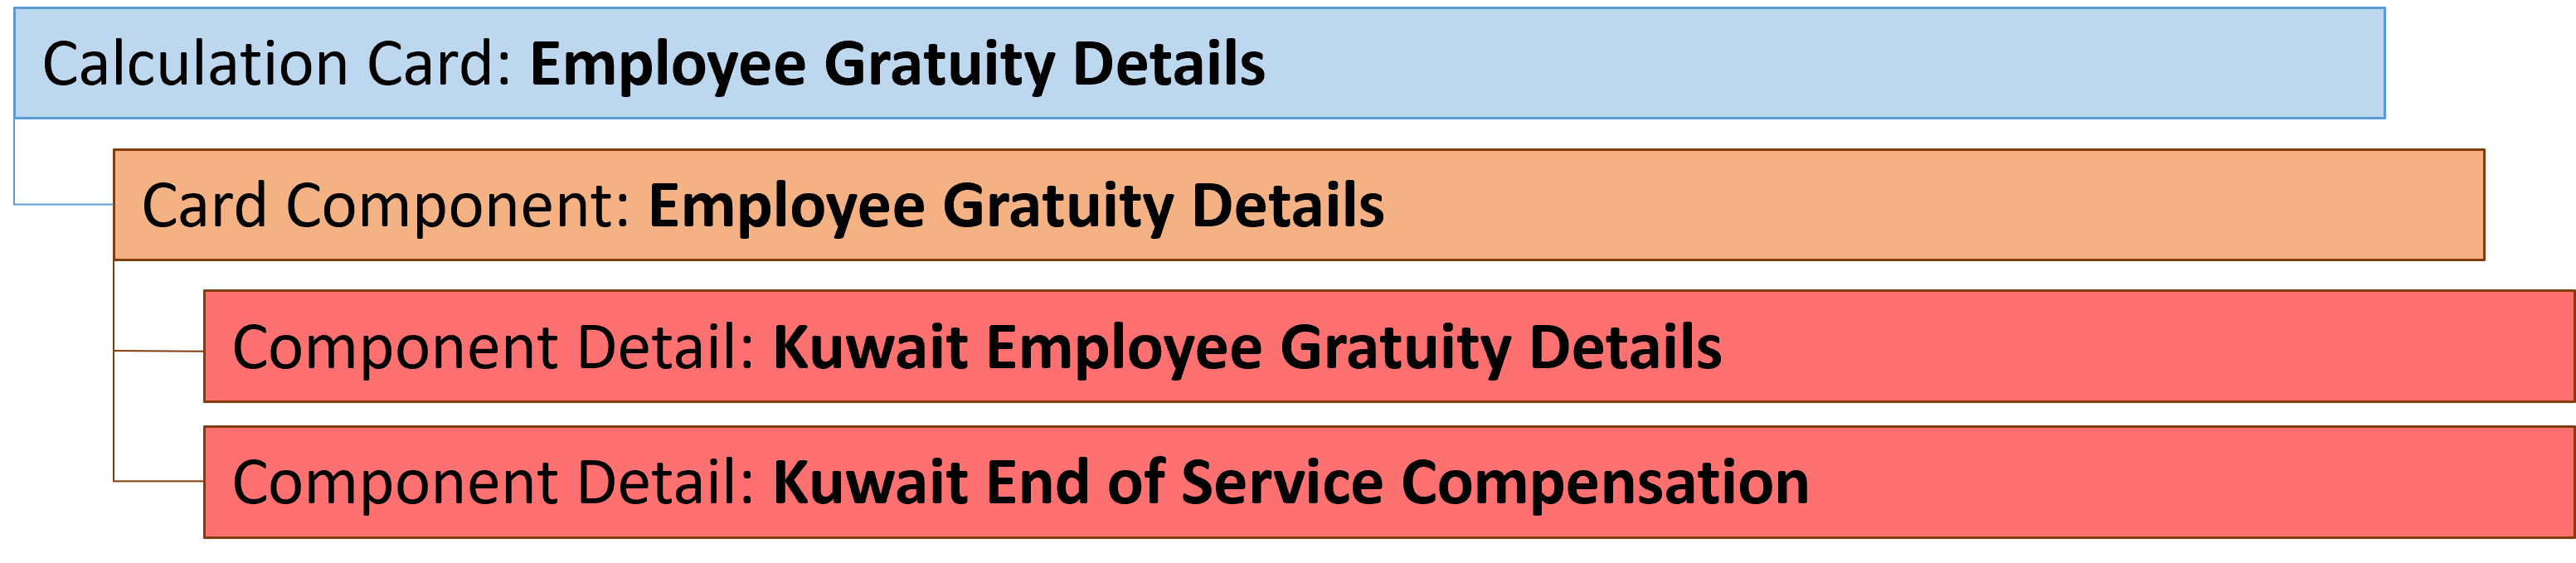 kw employee gratuity details component details